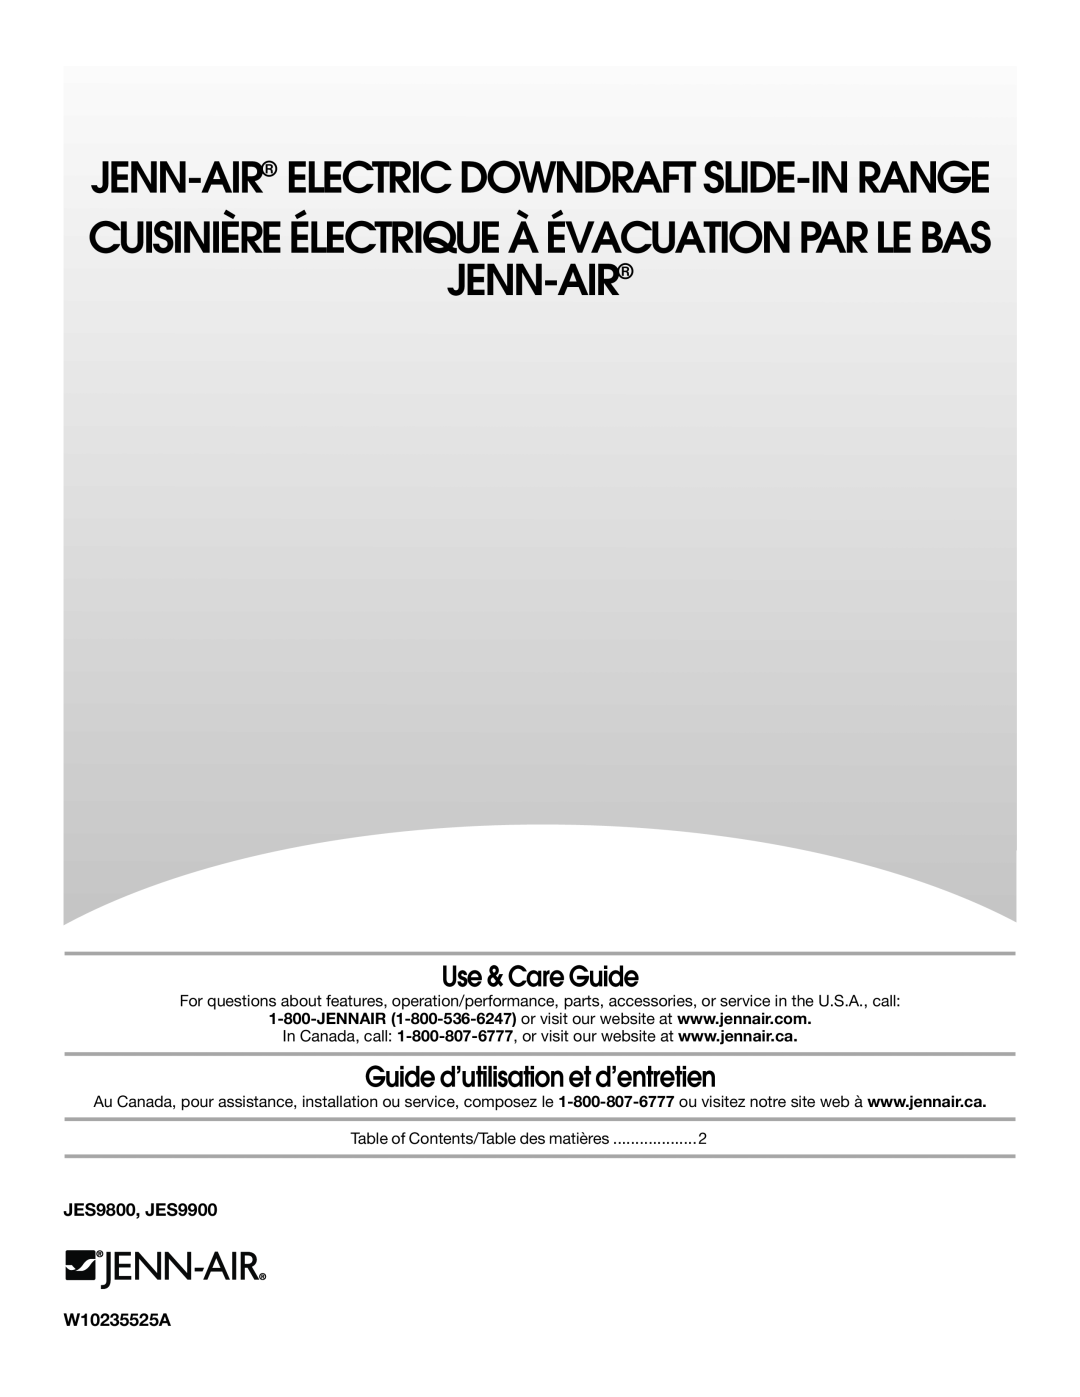 Jenn-Air manual Use & Care Guide, Guide d’utilisation et d’entretien, JES9800, JES9900, W10235525A, Jenn-Air 